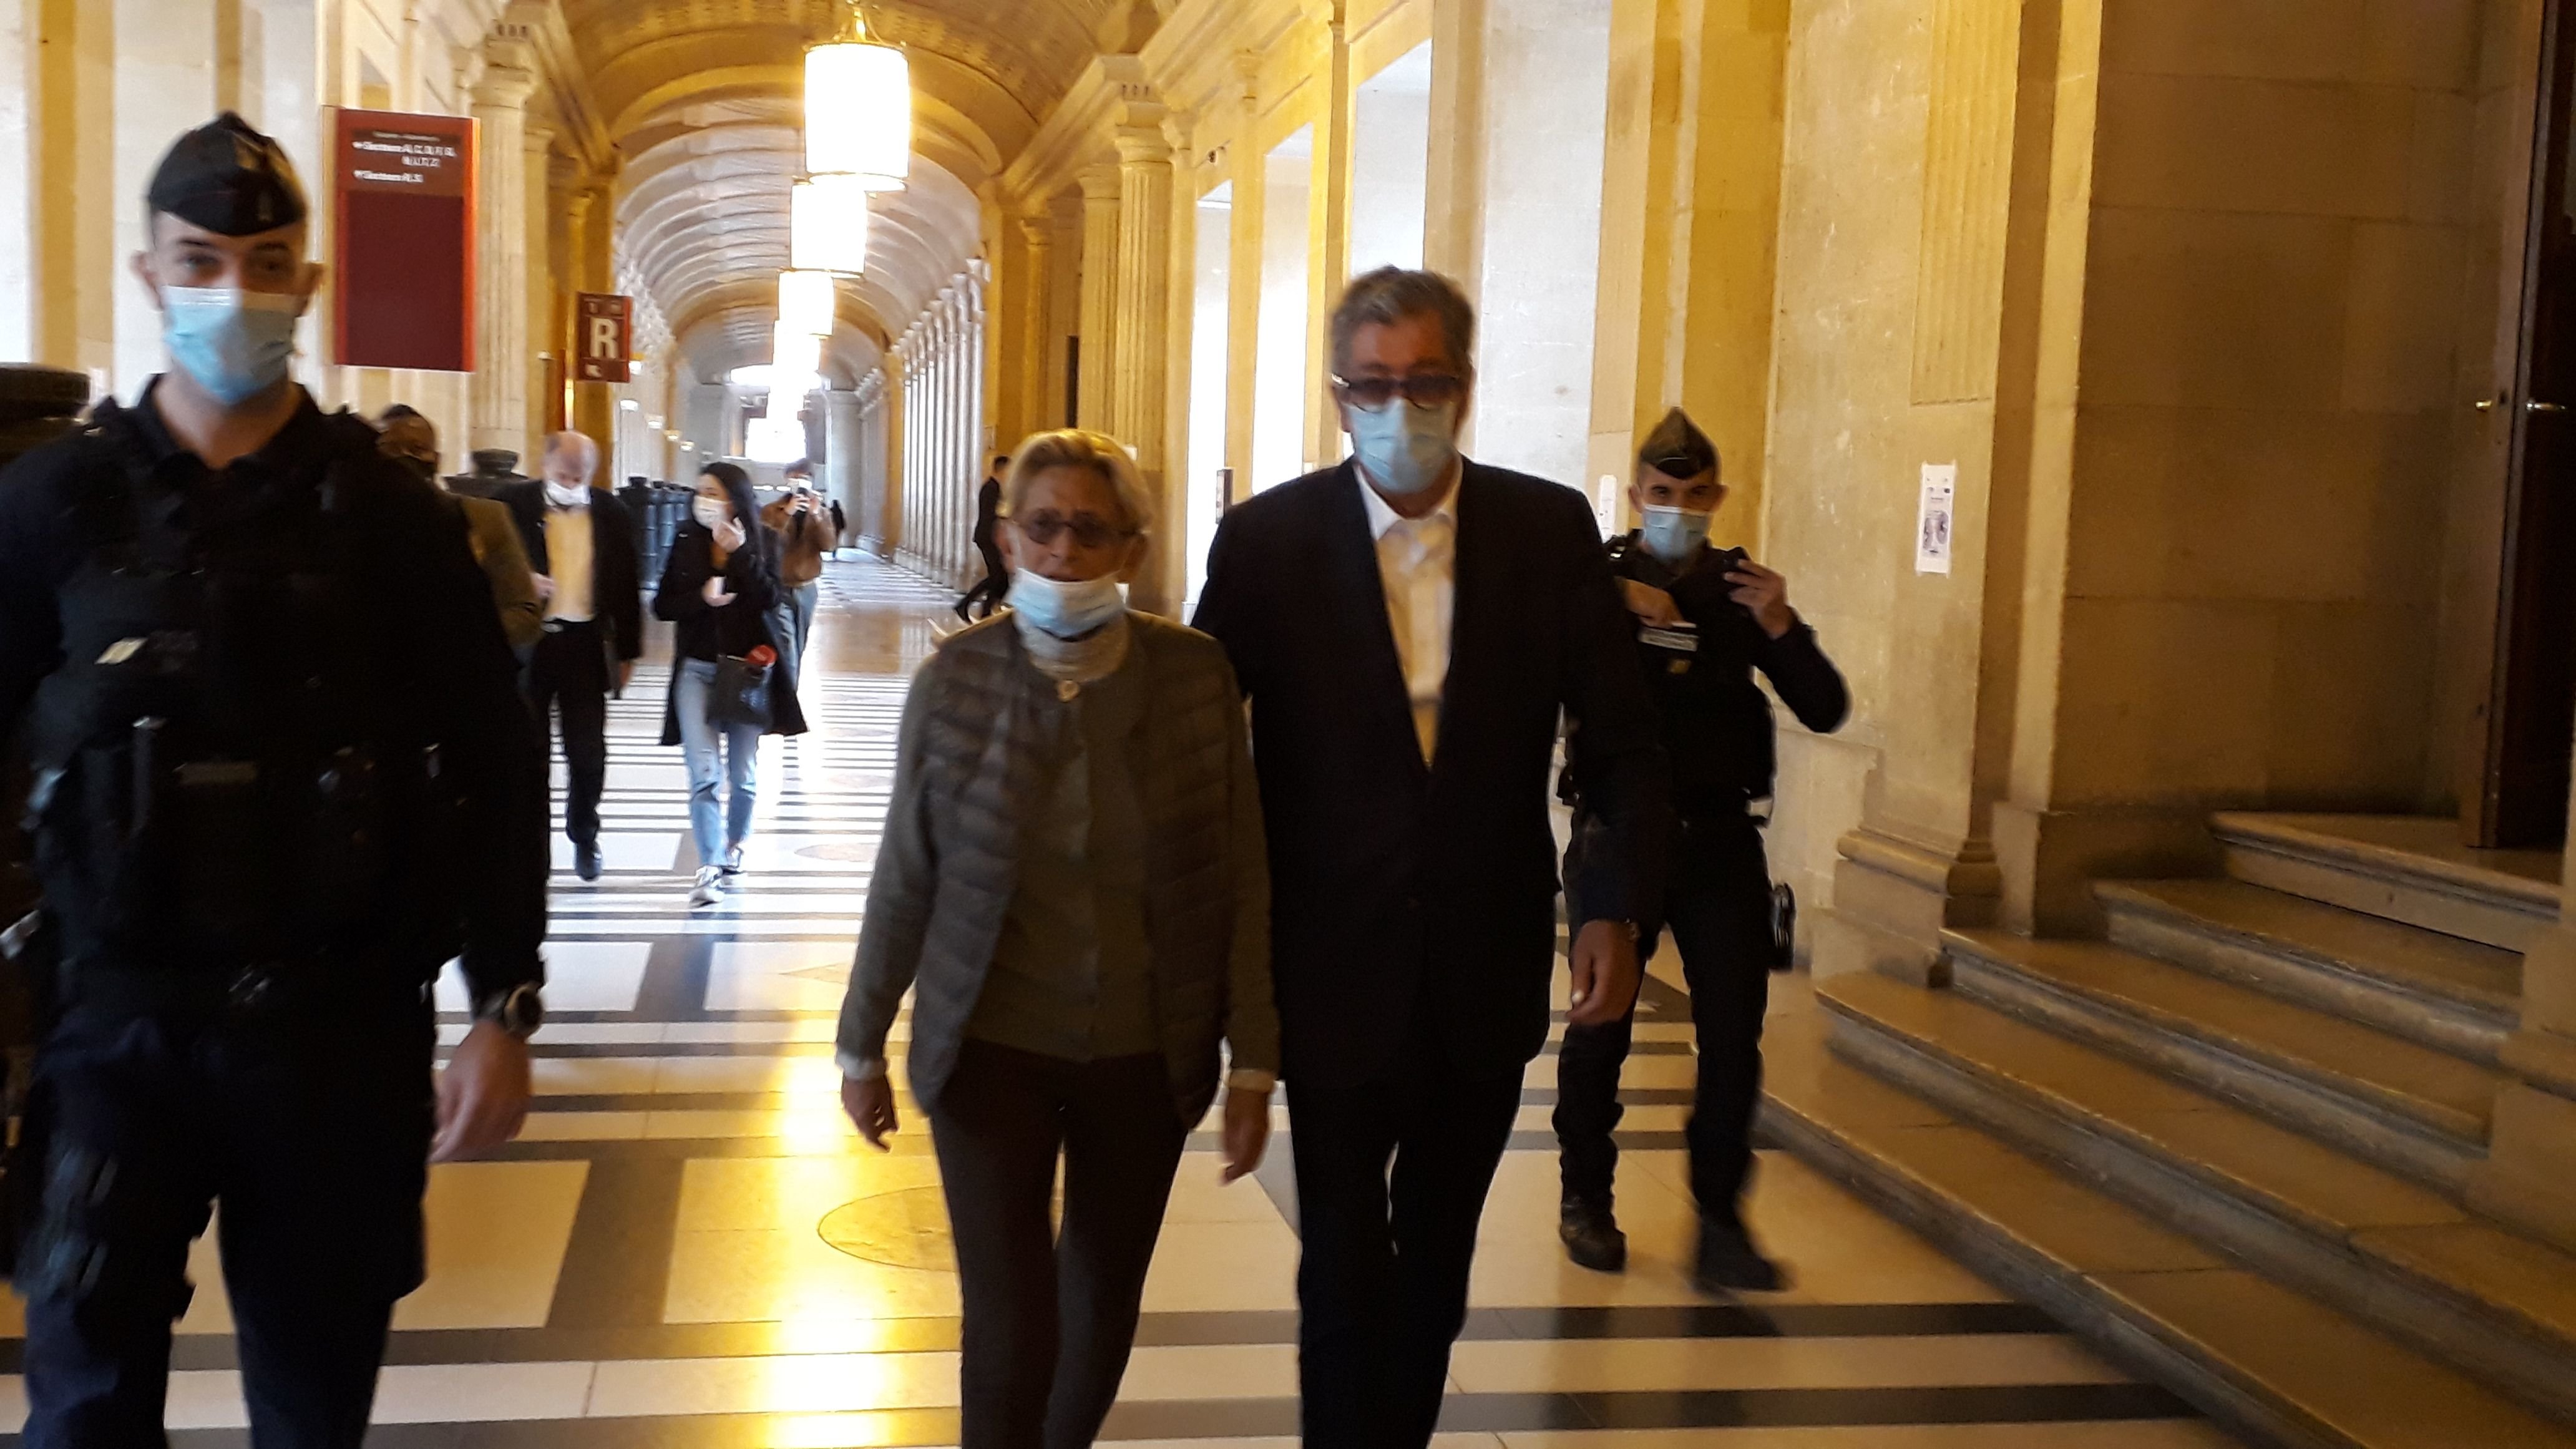 Patrick et Isabelle Balkany, ici le 5 mai 2021, au sortir de la Cour de cassation après l'examen de leur pourvoi contre l'arrêt de la cour d'appel de Paris, qui les a condamnés dans le deuxième volet de l'affaire, le blanchiment de fraude fiscale. LP/Valérie Mahaut